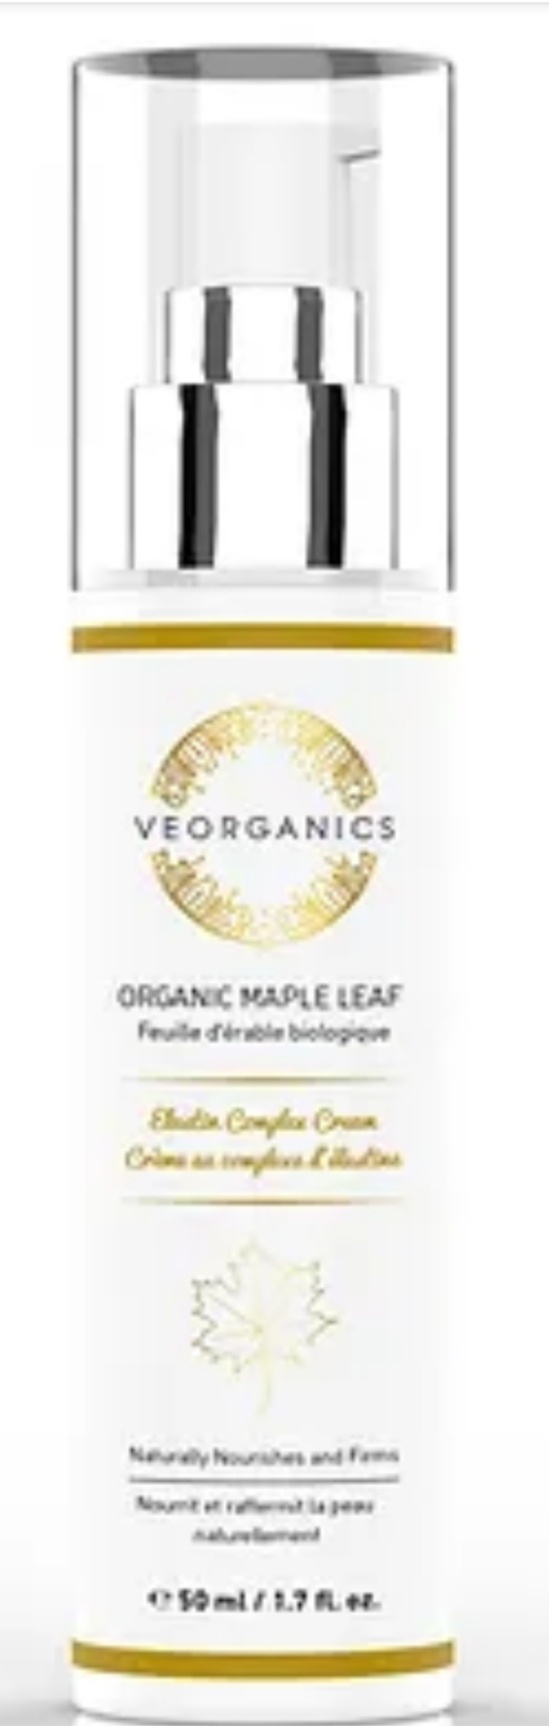 Veorganics Organic Maple Leaf Elastin Complex Cream